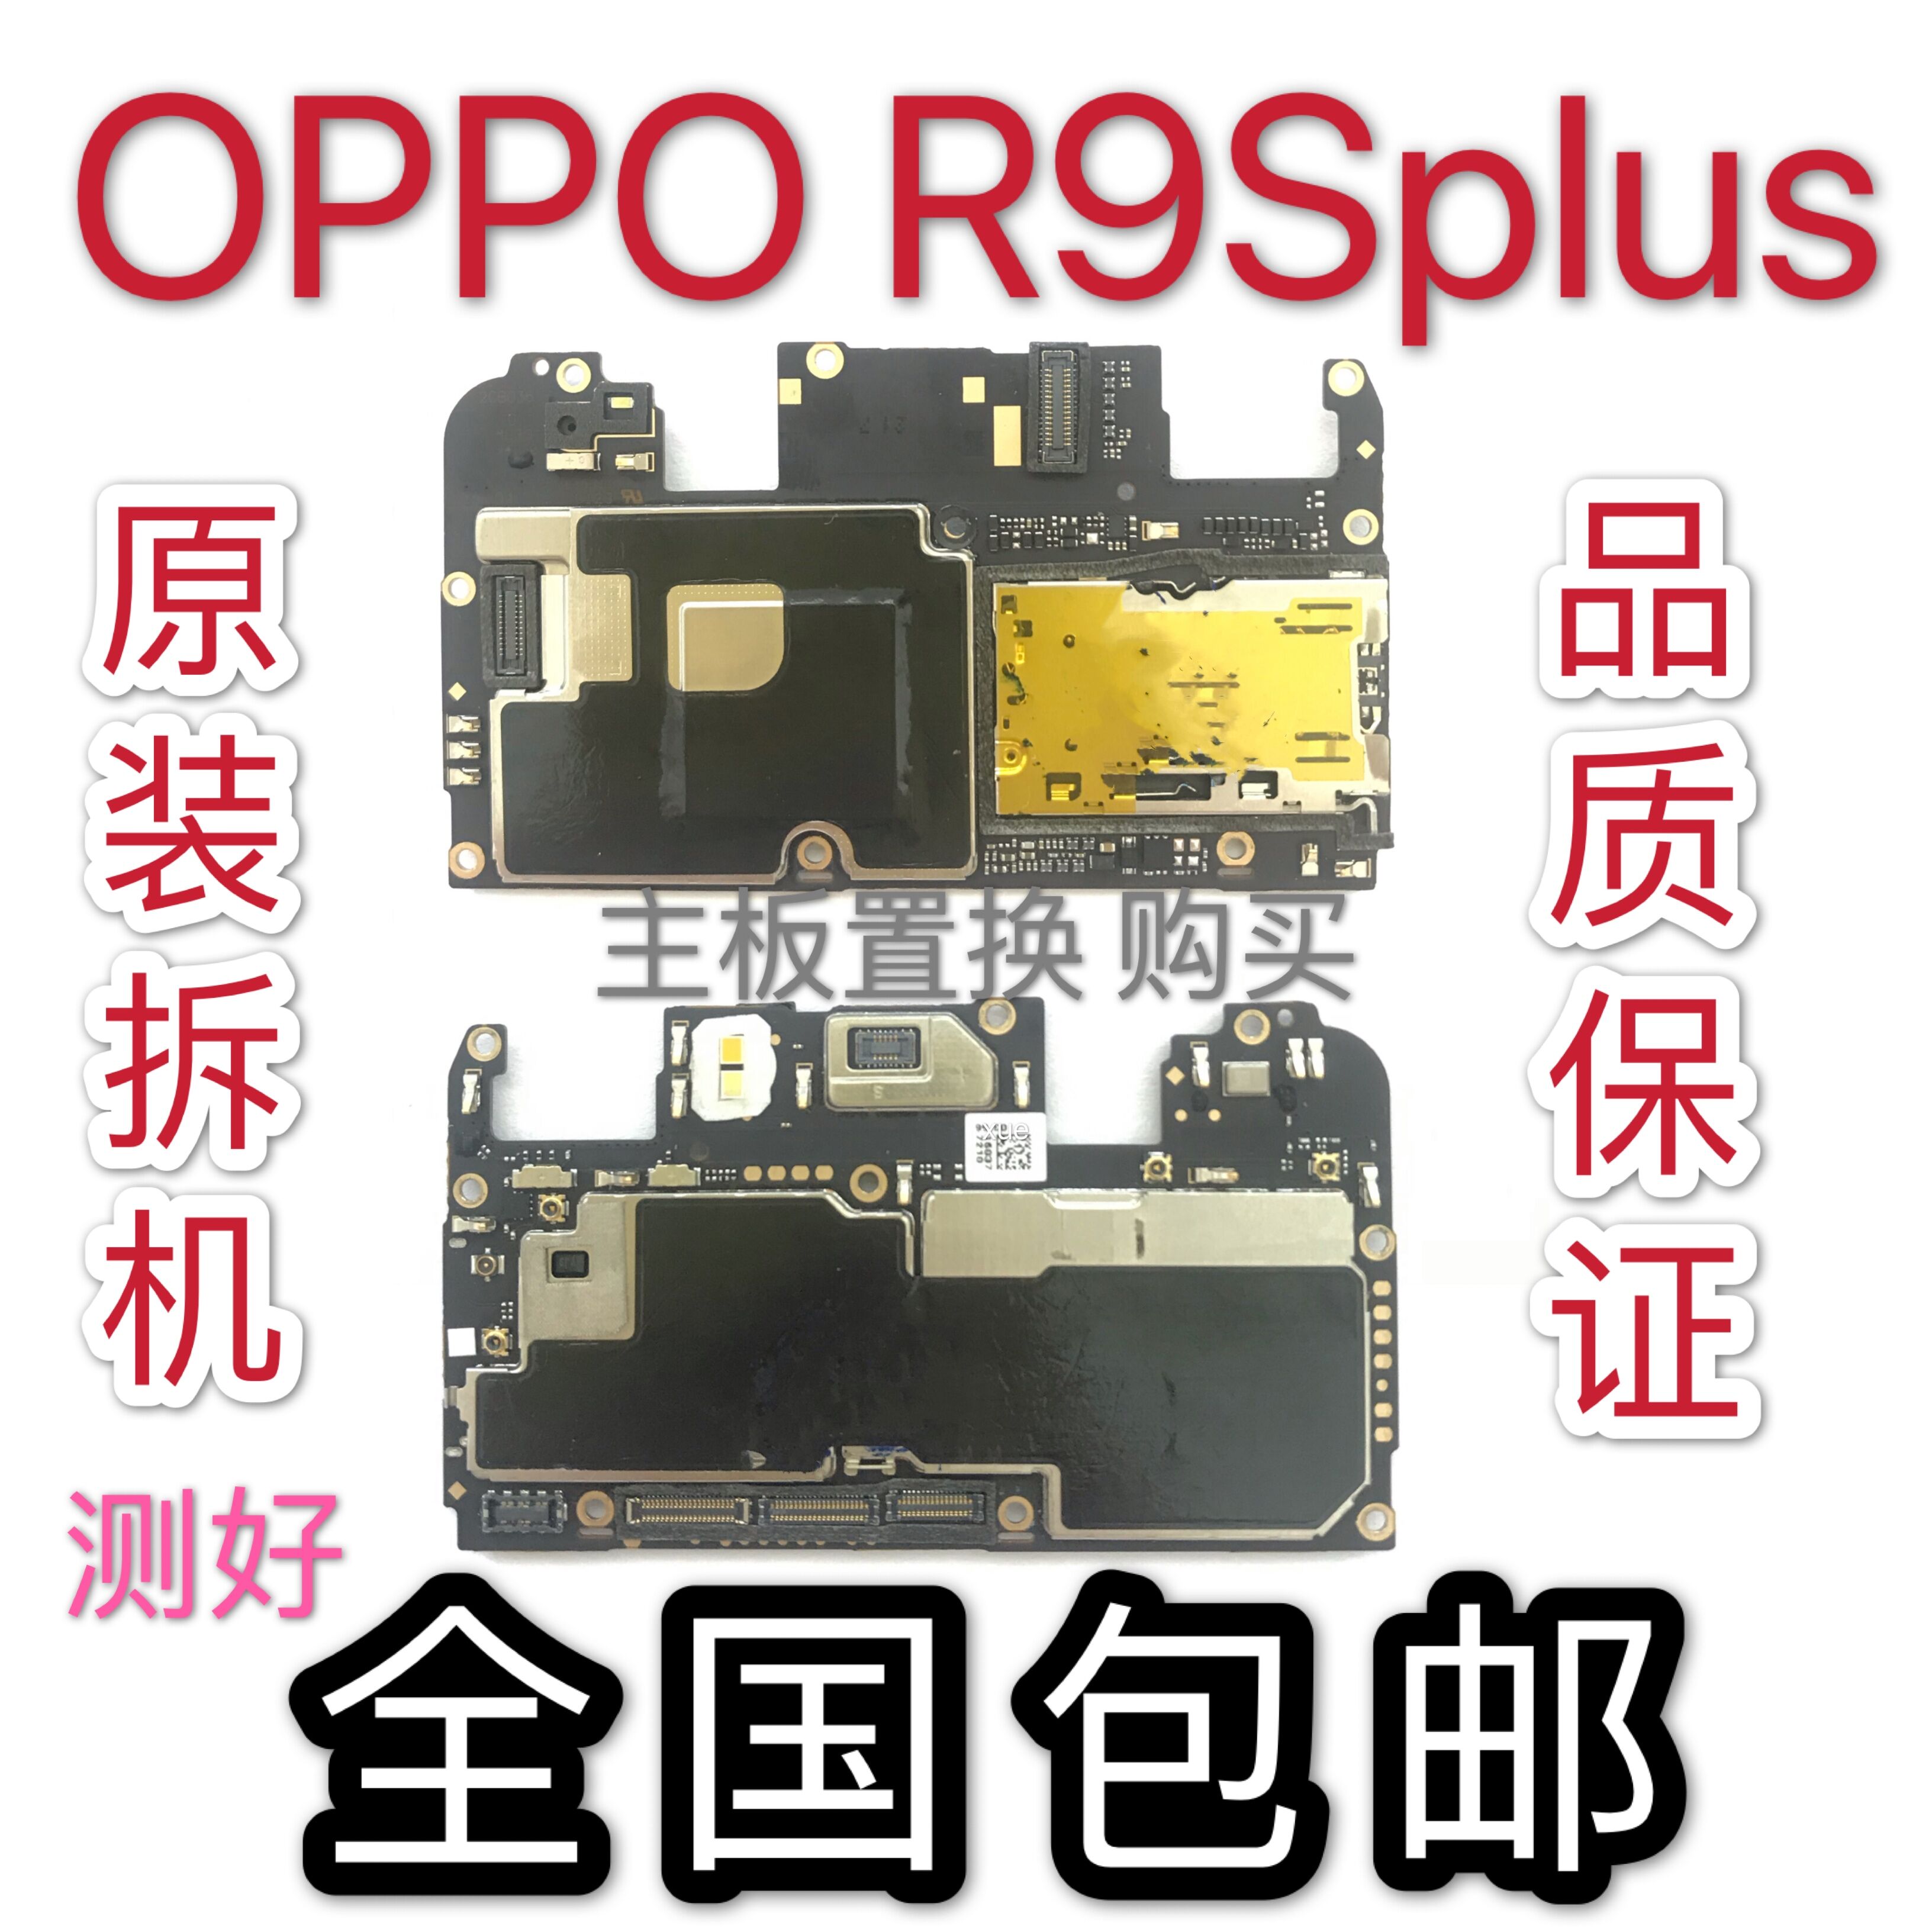 适用于oppoR9splus主板 换9sp更r全好主板oppor9s机重启死p主板兑